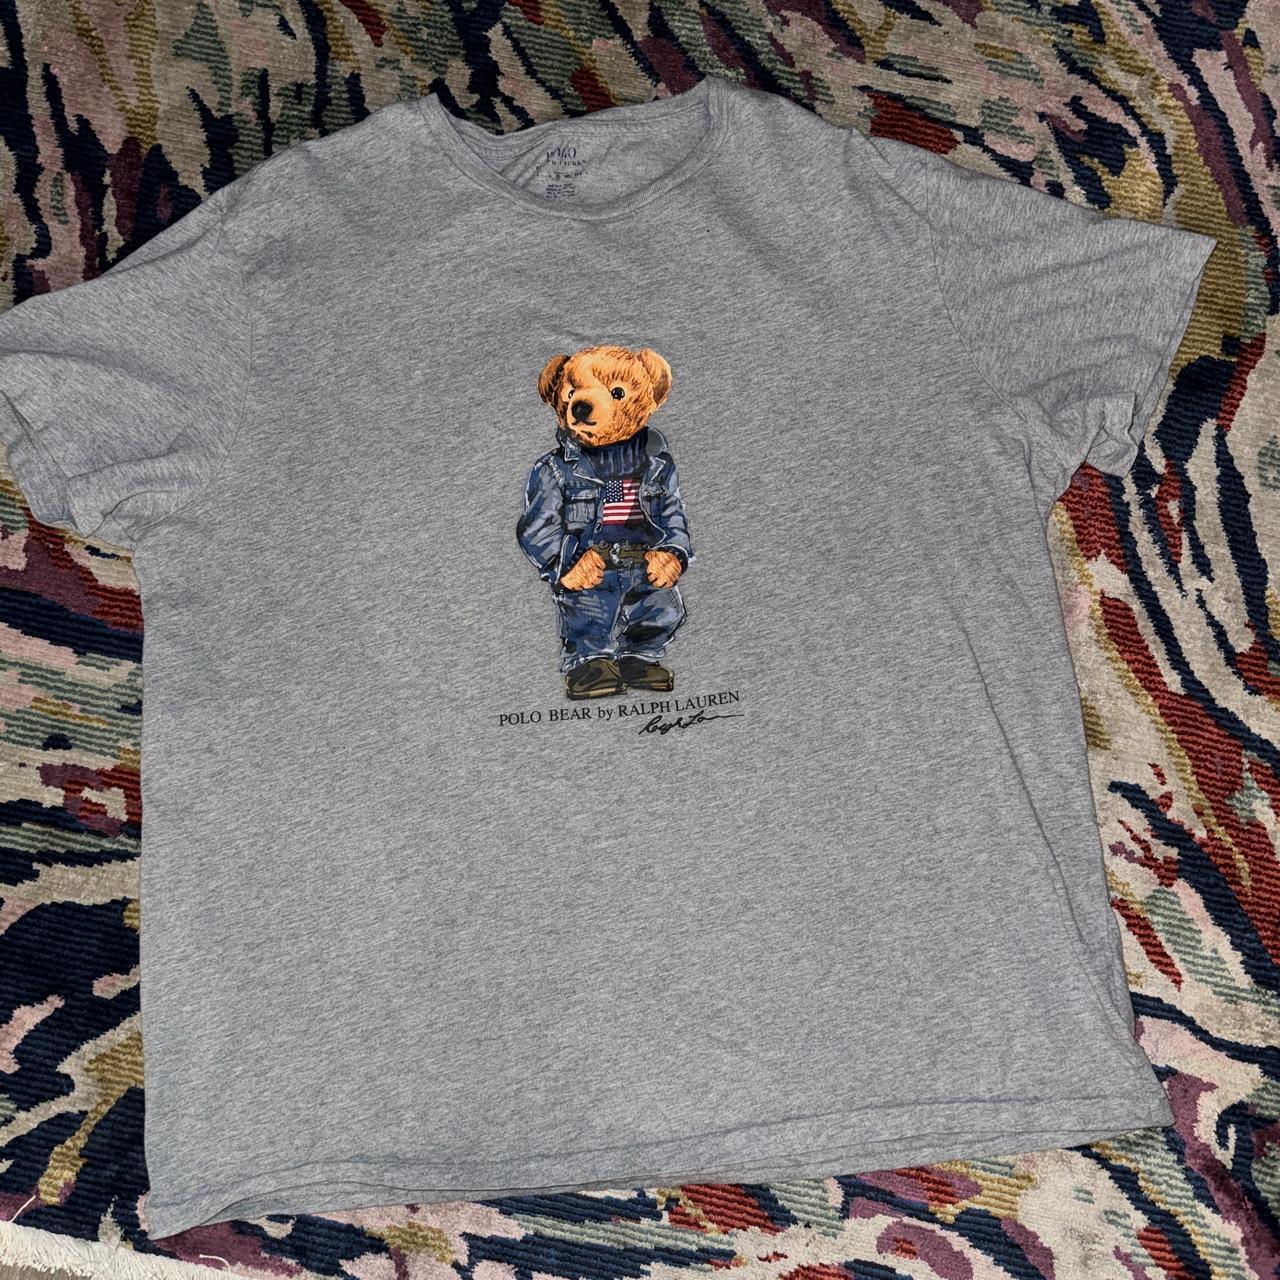 polo ralph lauren bear shirt size L worn, in good... - Depop